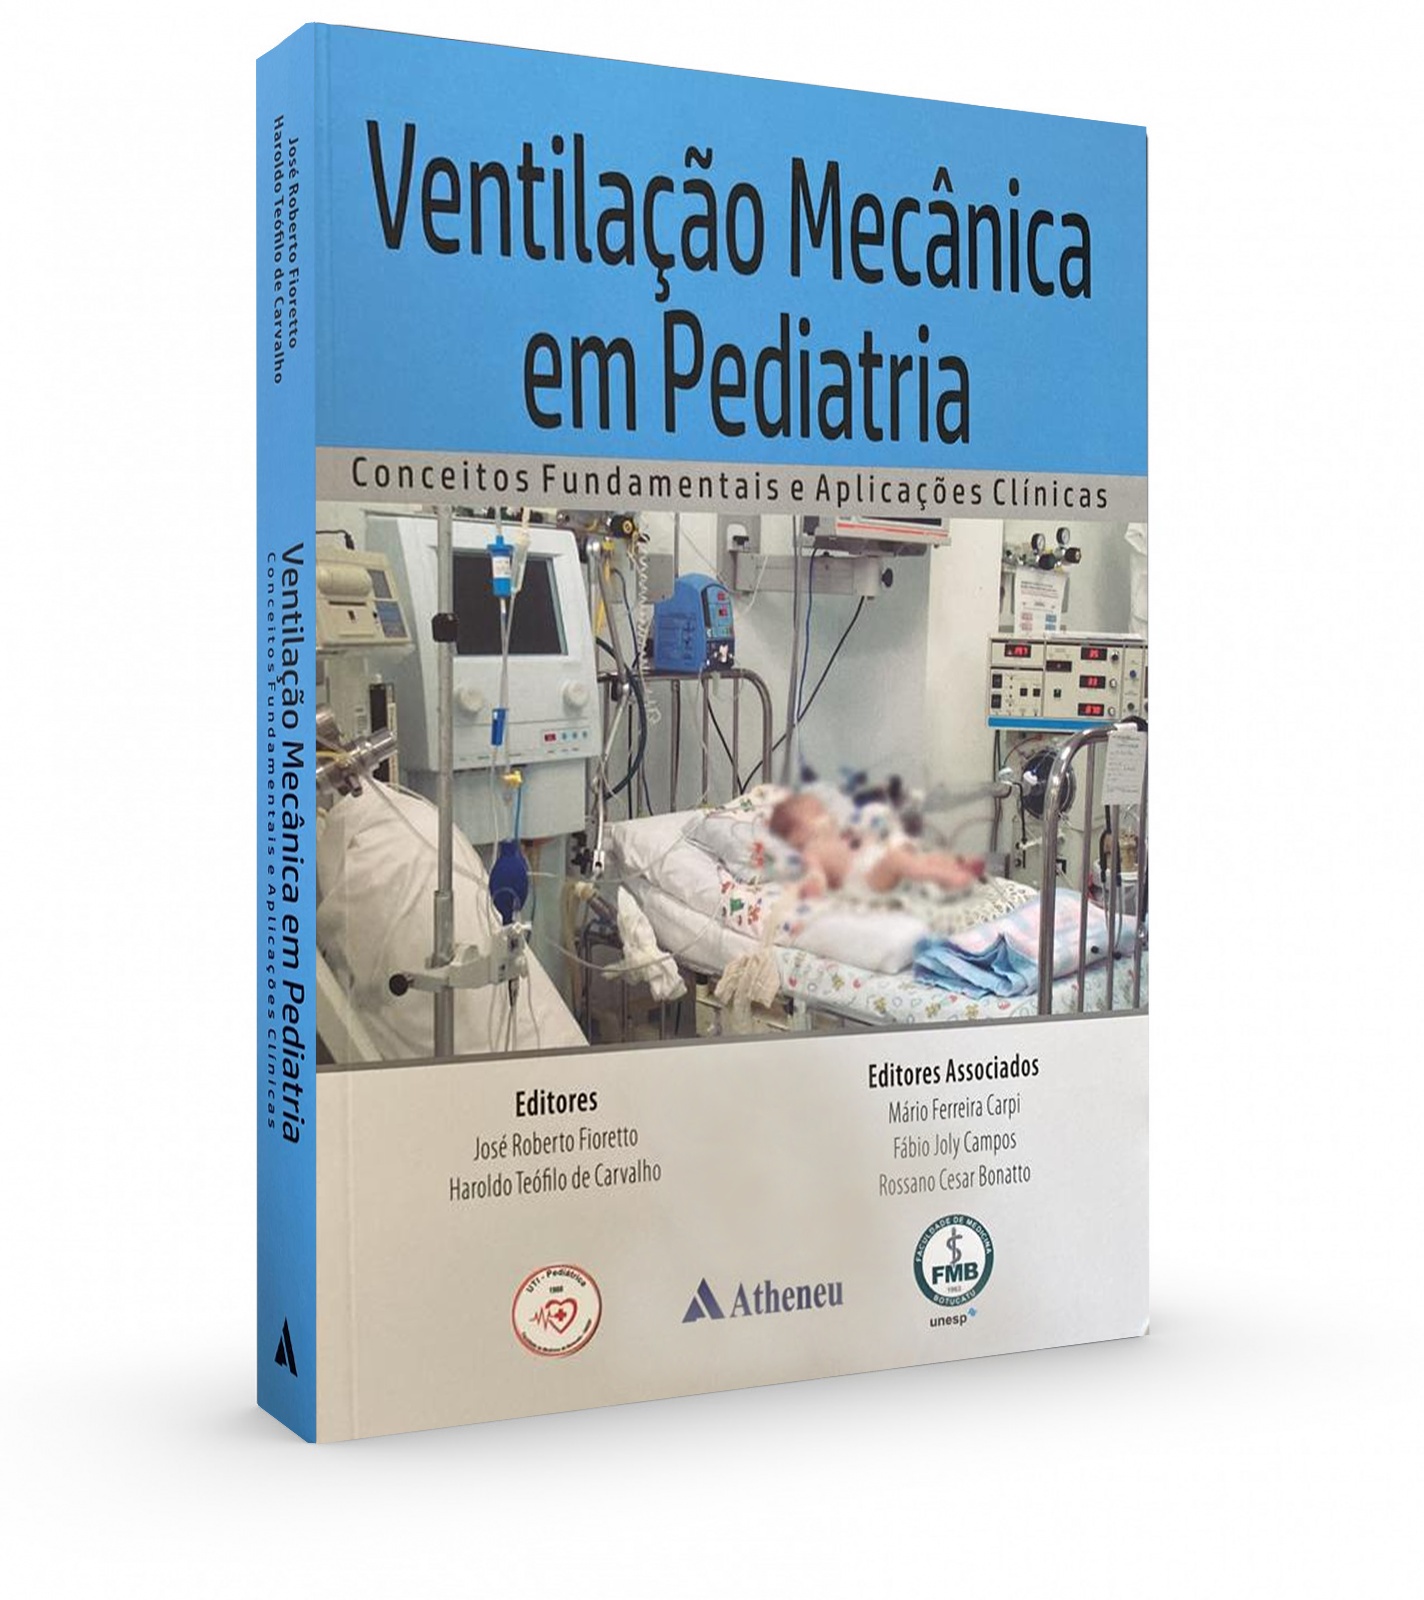 Ventilação Mecânica Em Pediatria - Conceitos Fundamentais E Aplicações Clínicas